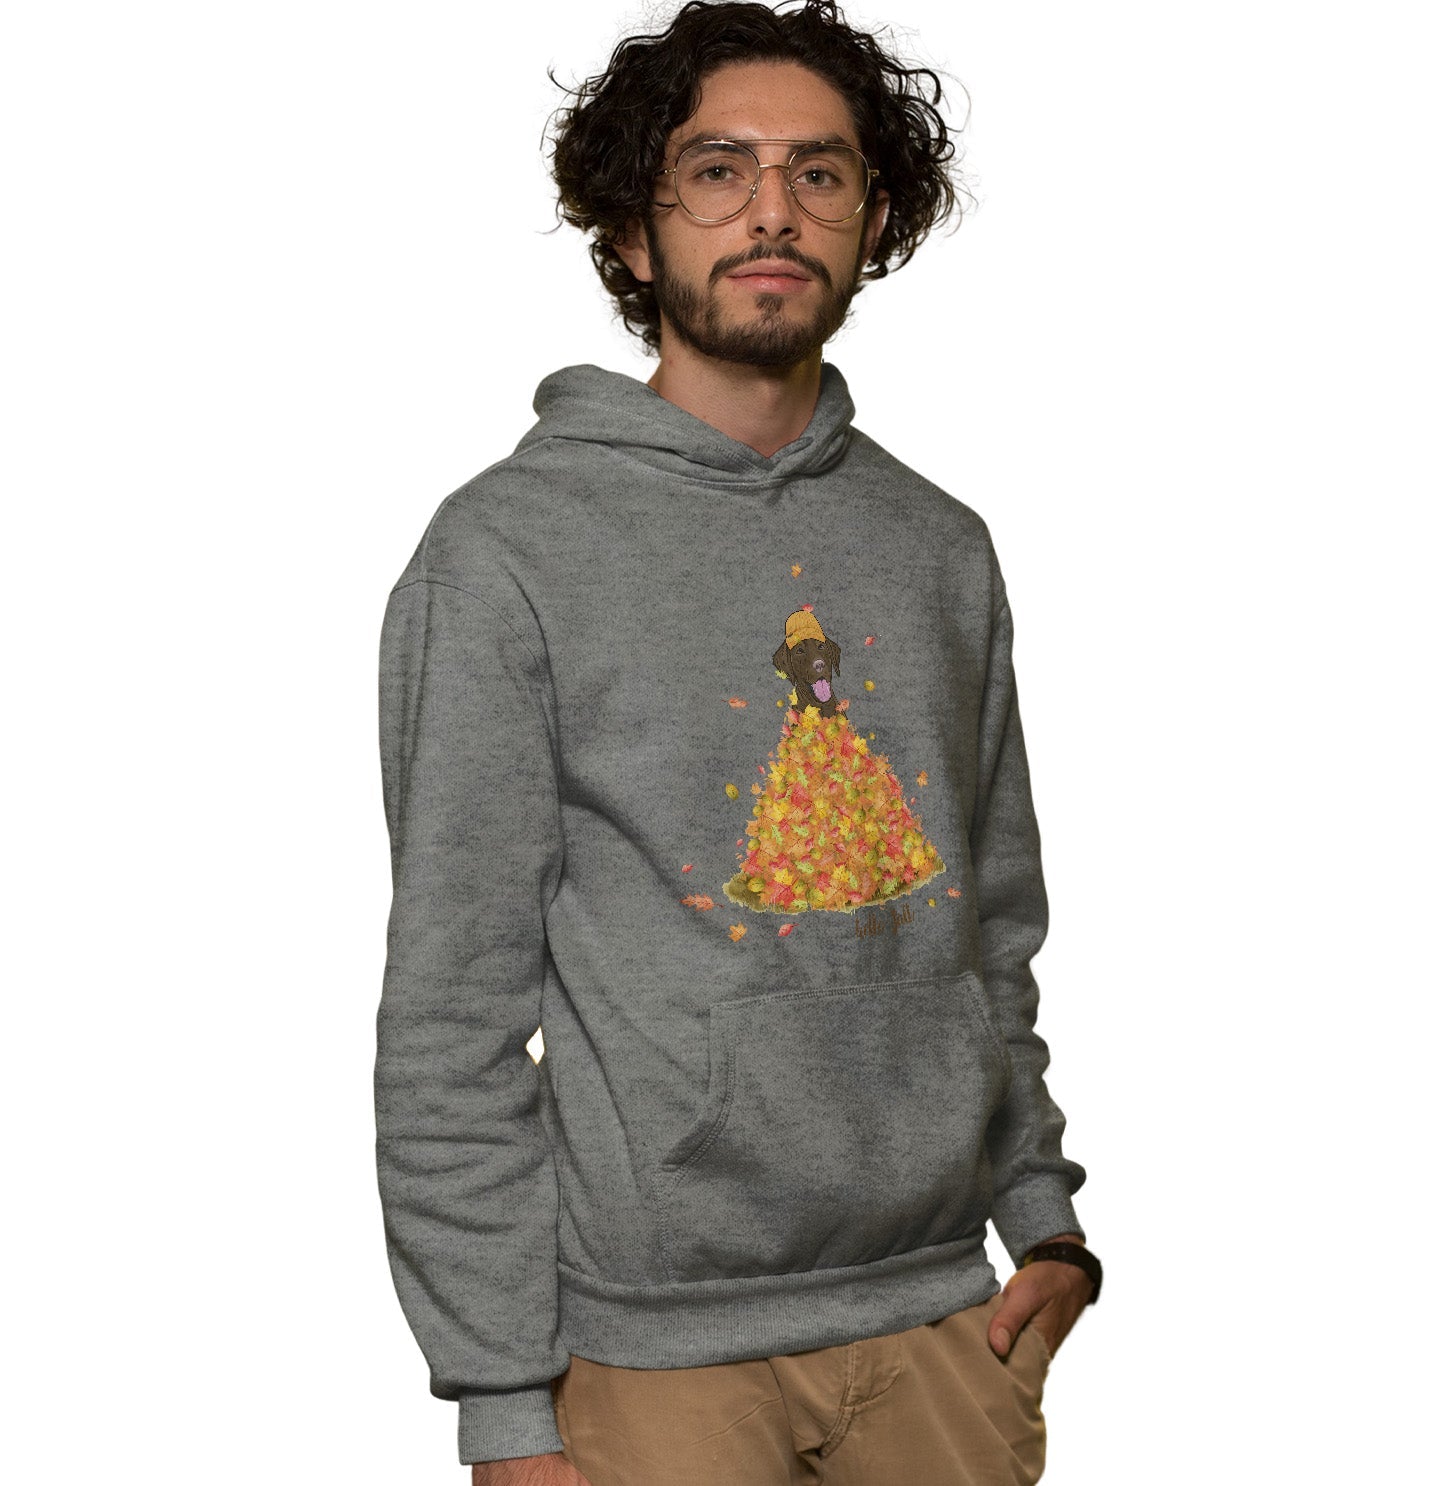 Leaf Pile and Chocolate Lab - Adult Unisex Hoodie Sweatshirt